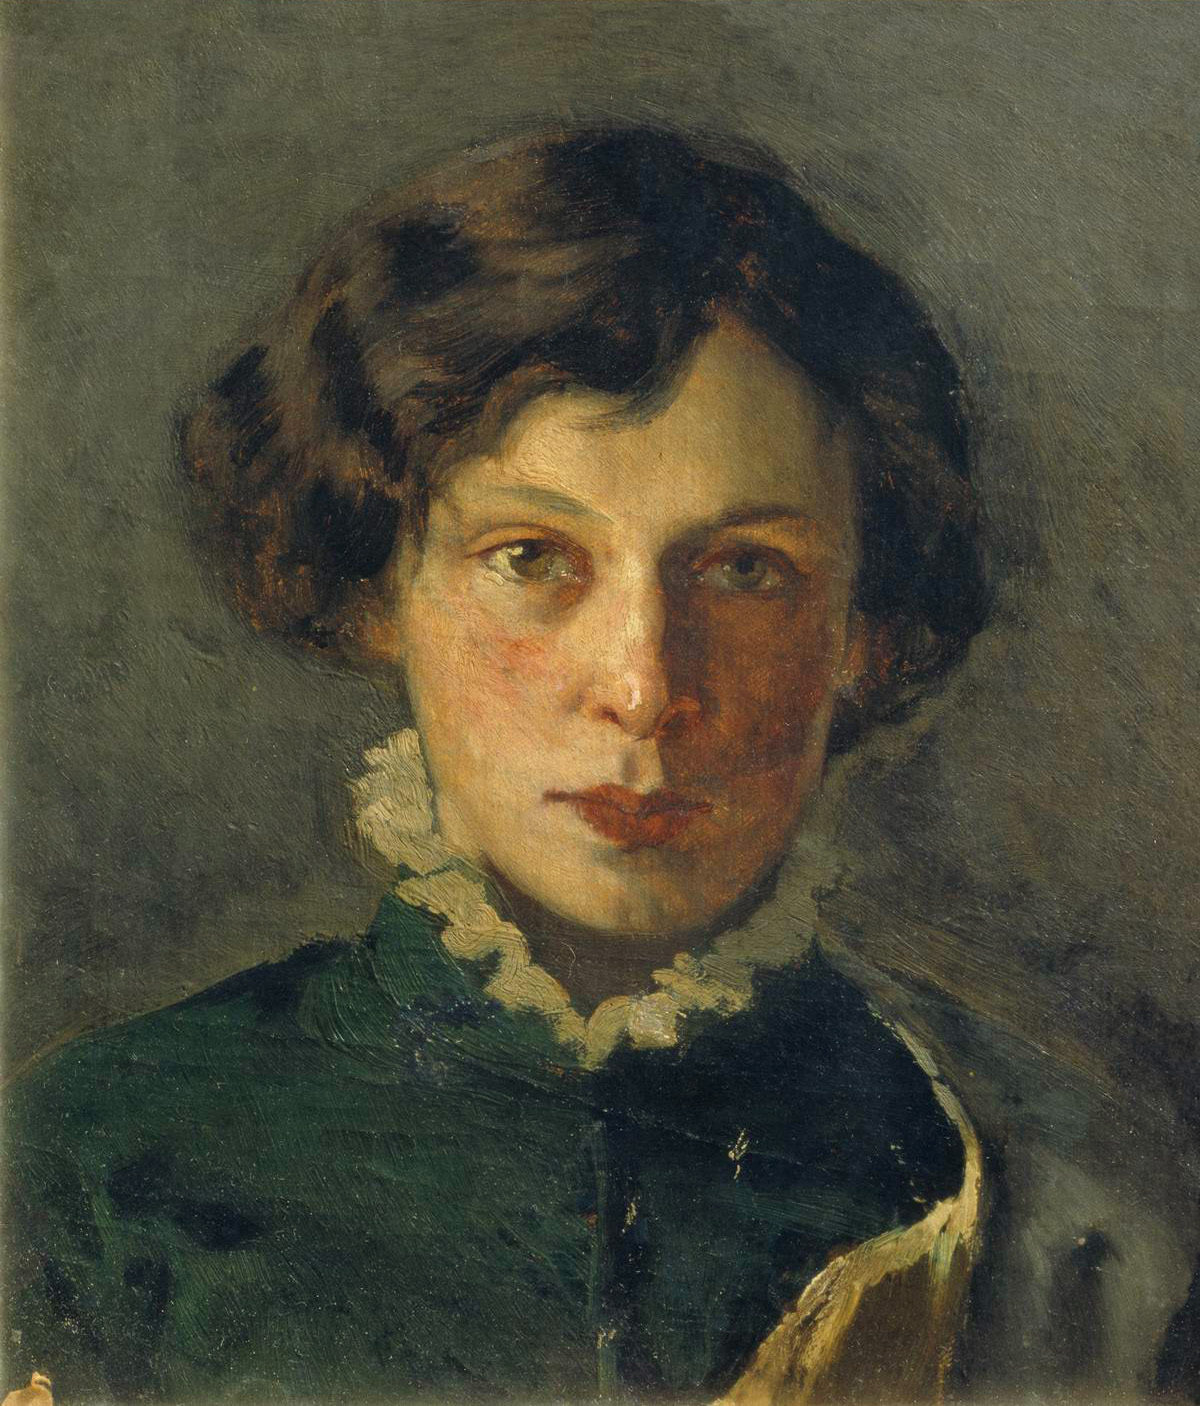 Нестеров М.. Портрет М.И.Нестеровой, первой жены художника. 1886